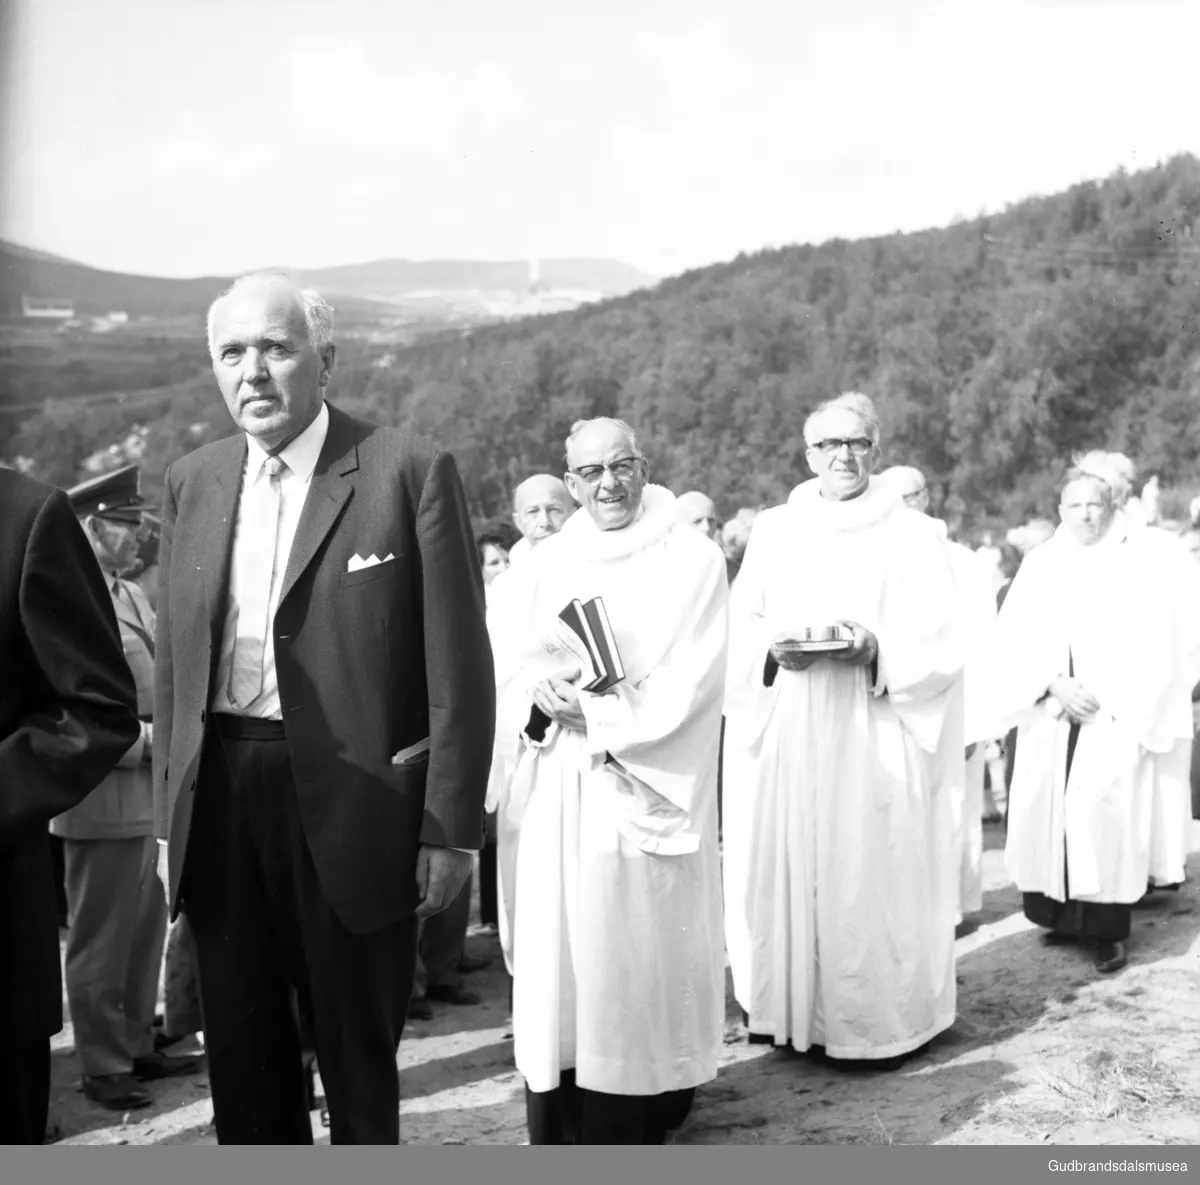 Frå vigslinga av Eysteinskyrkja på Hjerkinn 3. august 1969. Leiv Løvold, direktør ved Tverrfjellet gruver på Hjerkinn og Kjell Bondevik, kirke- og undervisningsminister.